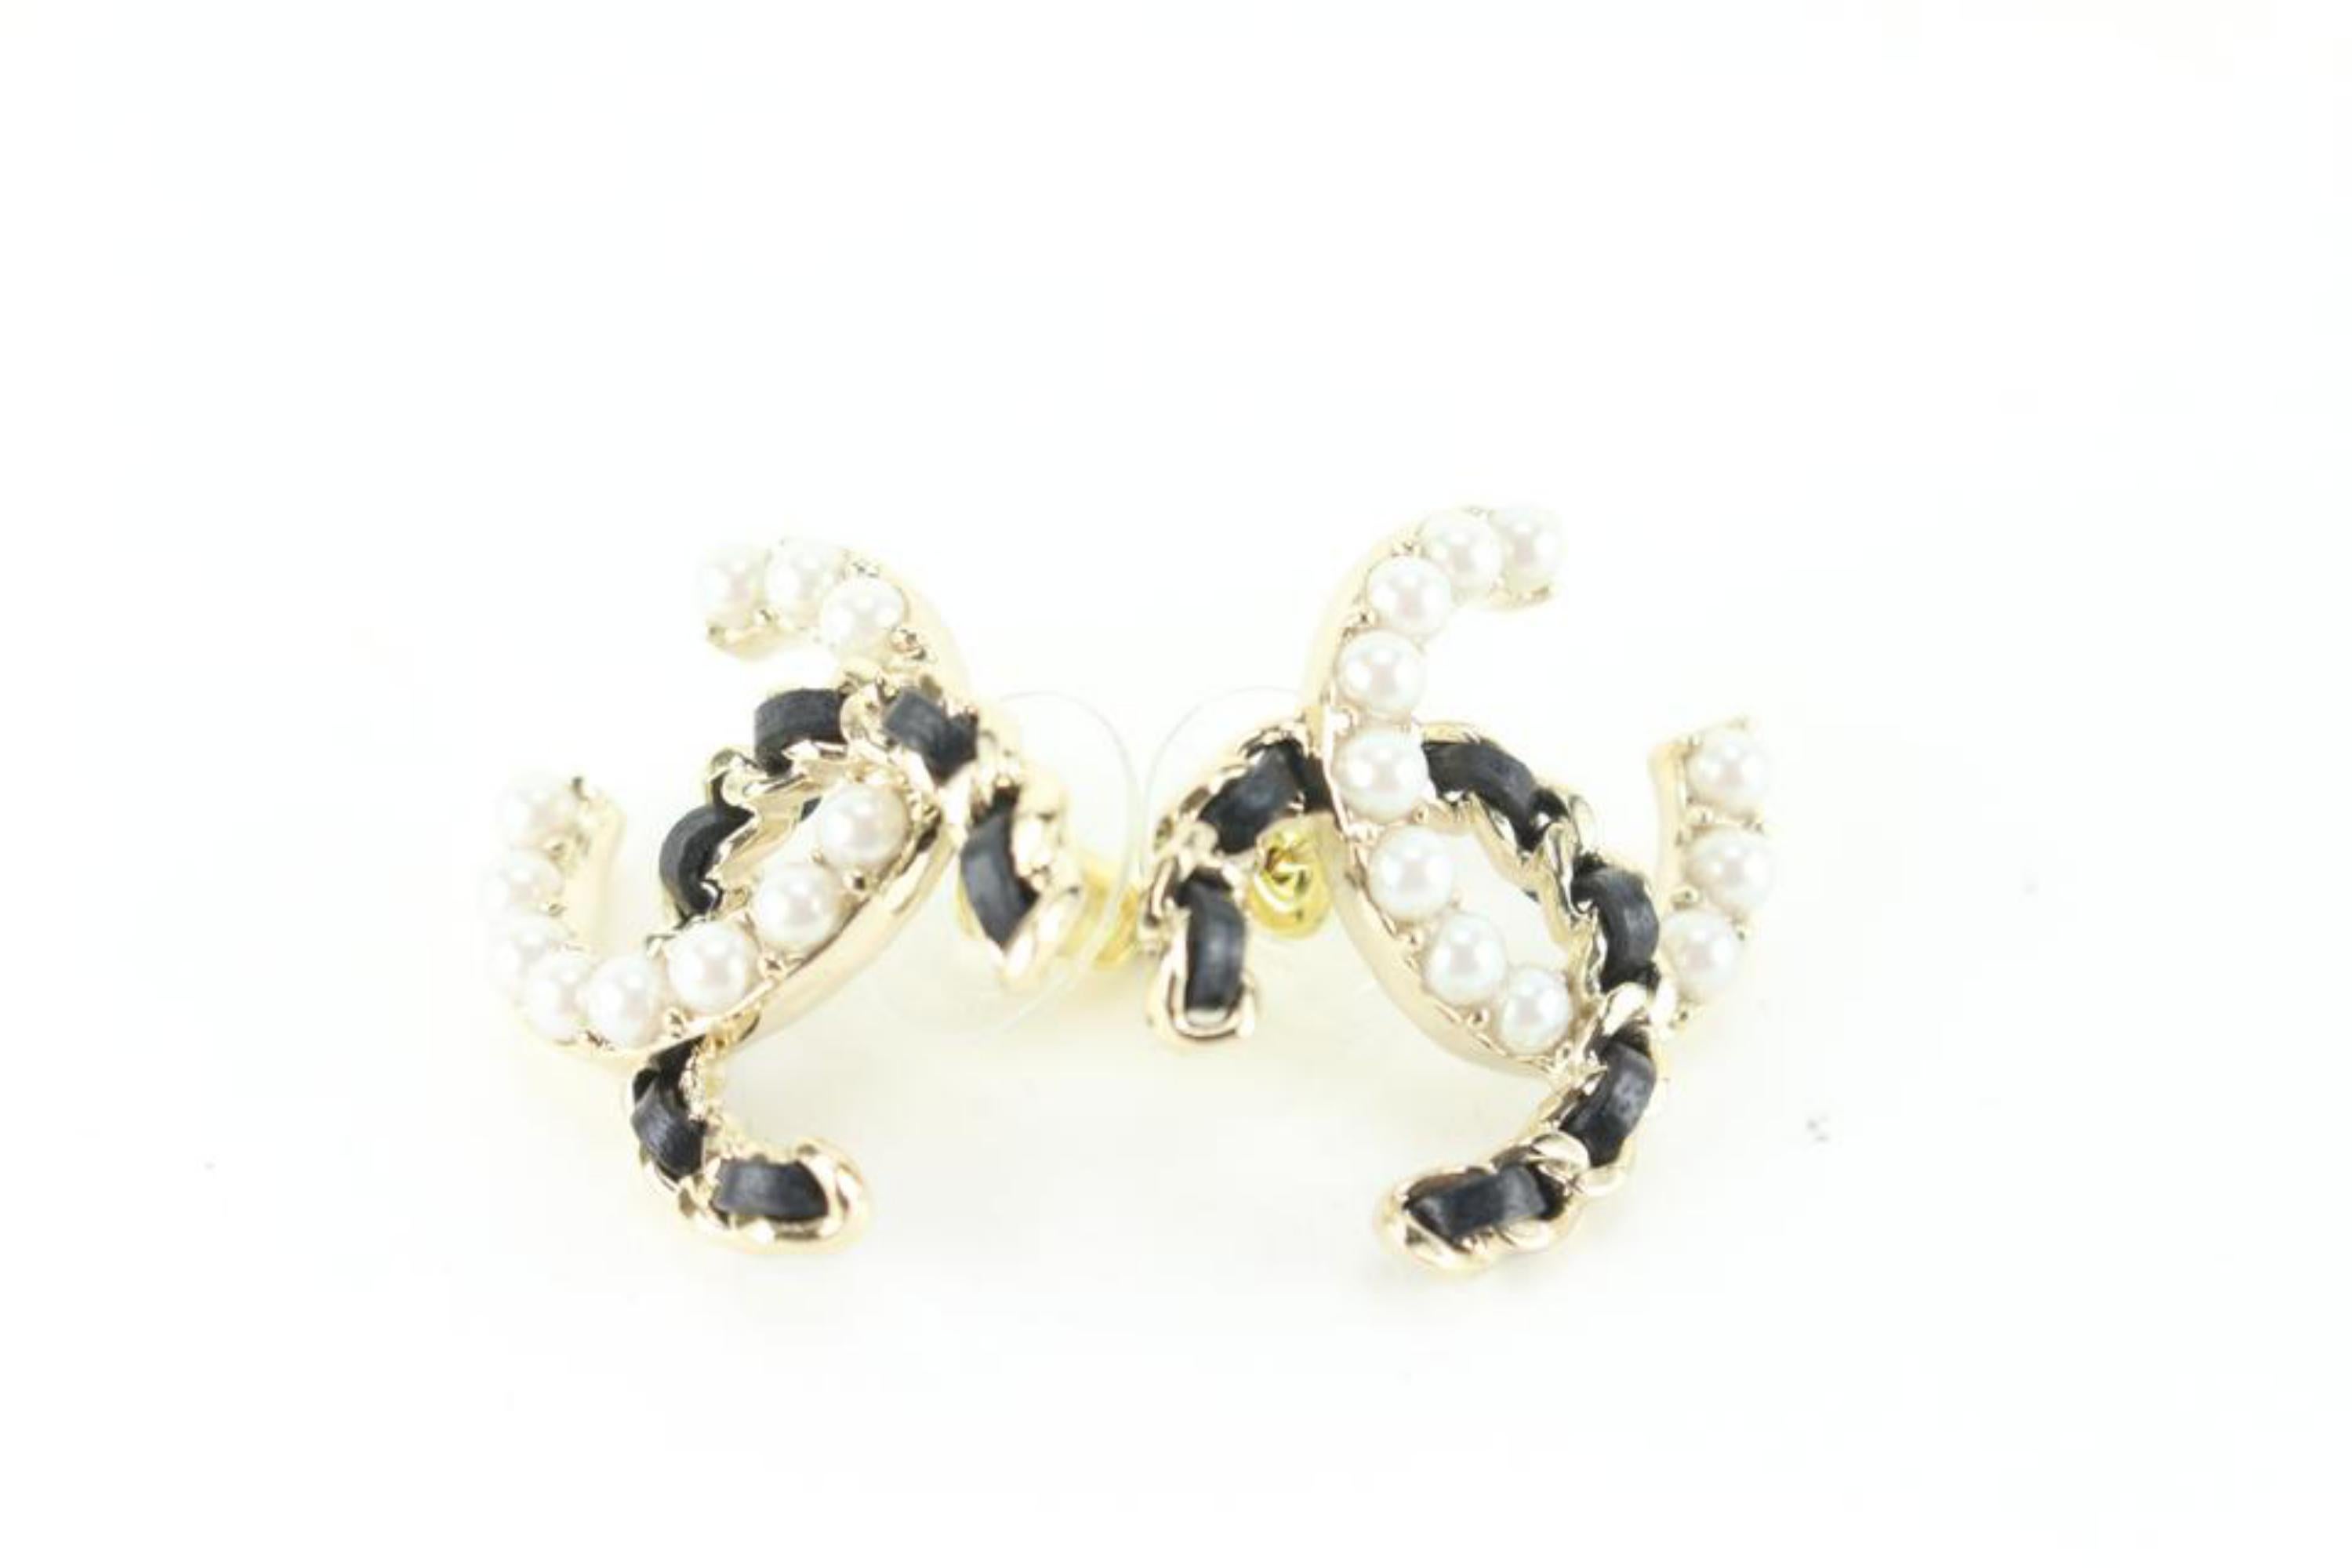 Beige Chanel 22B Pearl x Black Crystal CC Logo Pierce Earrings 81ck727s